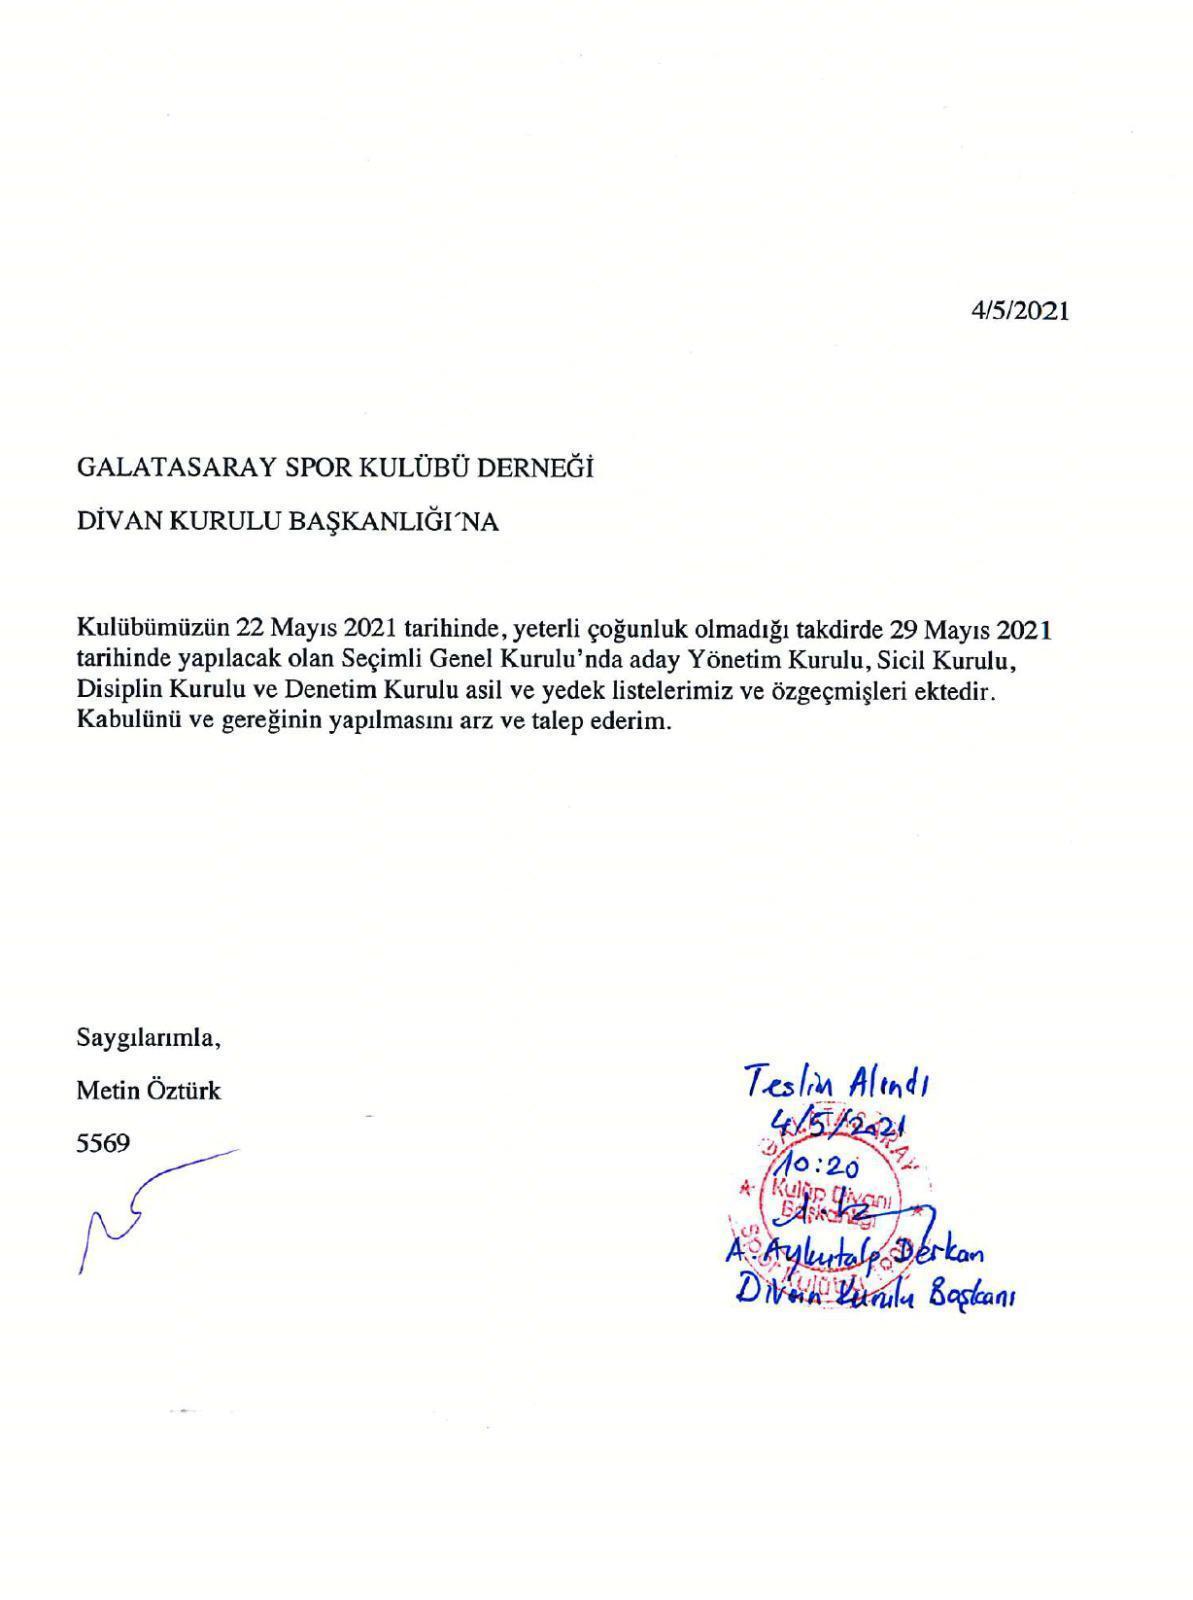 Metin Öztürk Galatasaray Başkan adaylığını resmen açıkladı